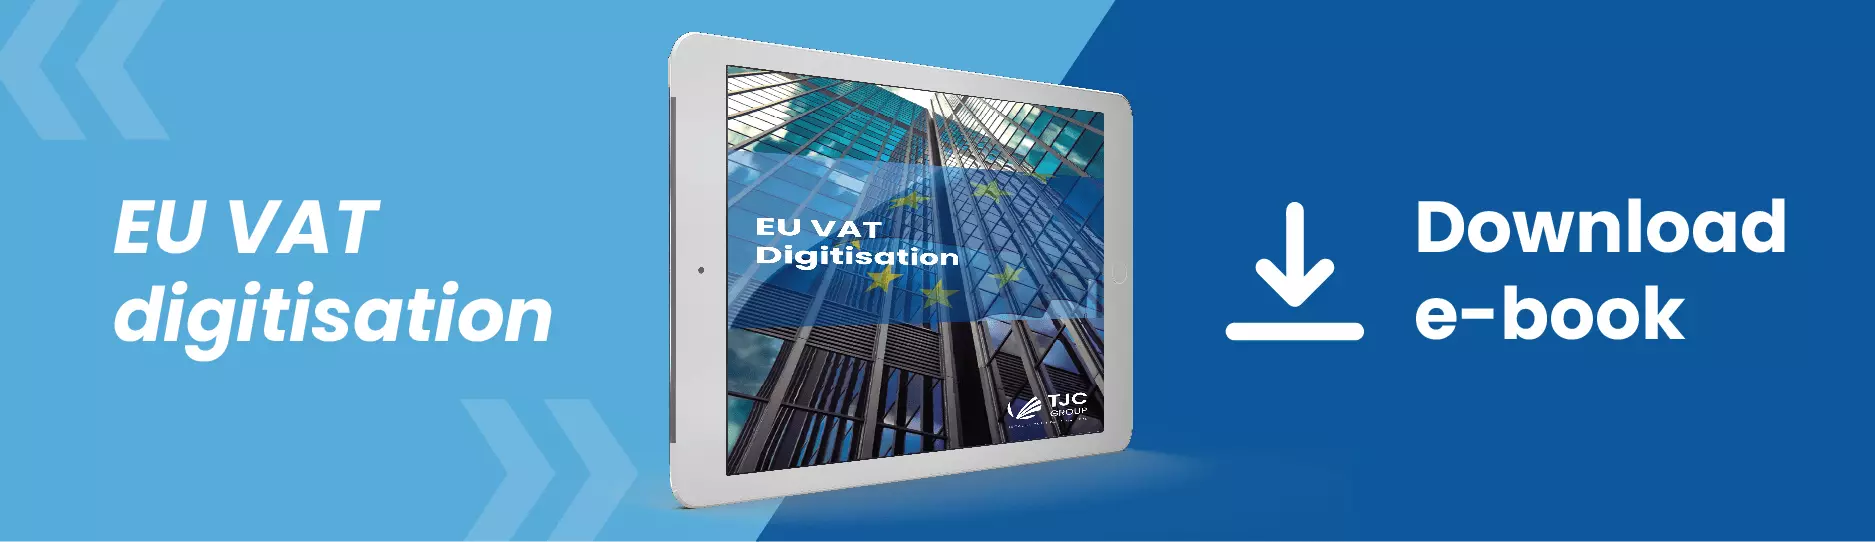 Téléchargement de livre électronique sur la TVA de l'UE | Groupe TJC